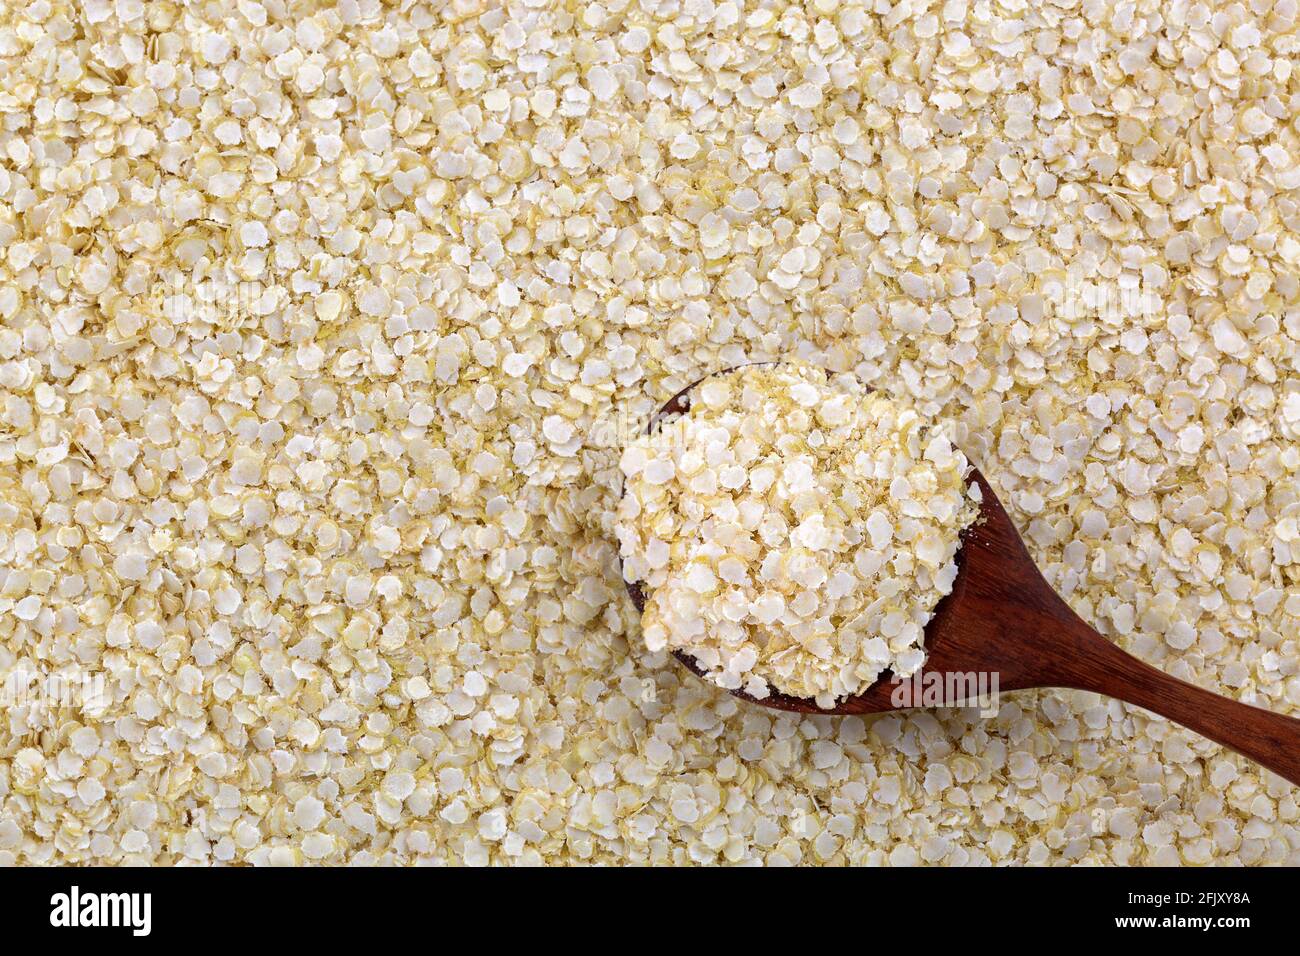 Cuillère de flocons de quinoa blanc roulé sans gluten. Grains organiques aplatis riches en protéines, fibres alimentaires, vitamines B, minéraux alimentaires (Chenopodi Banque D'Images